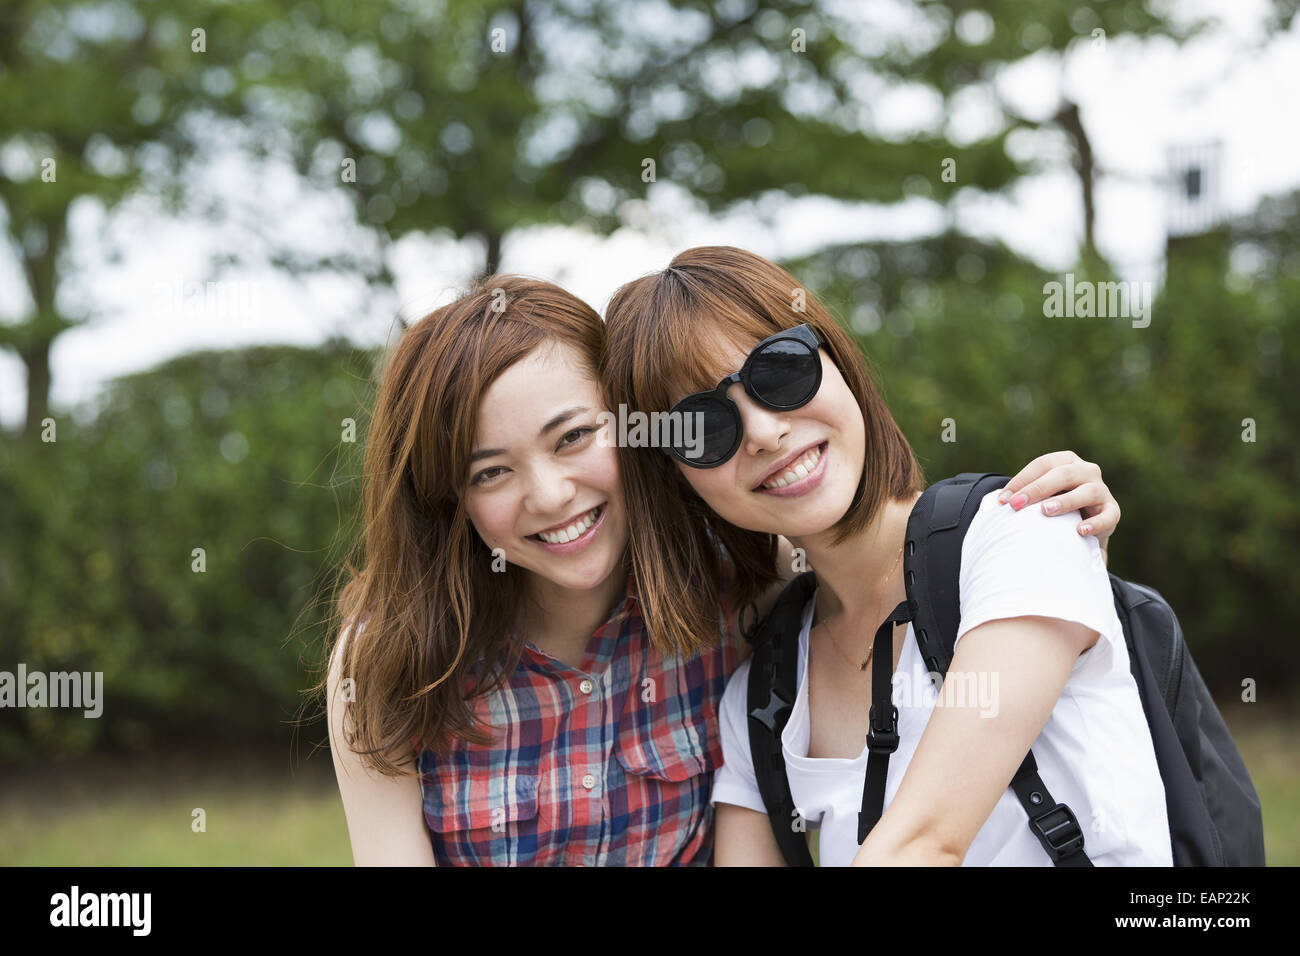 Dos mujeres jóvenes en el parque. Foto de stock